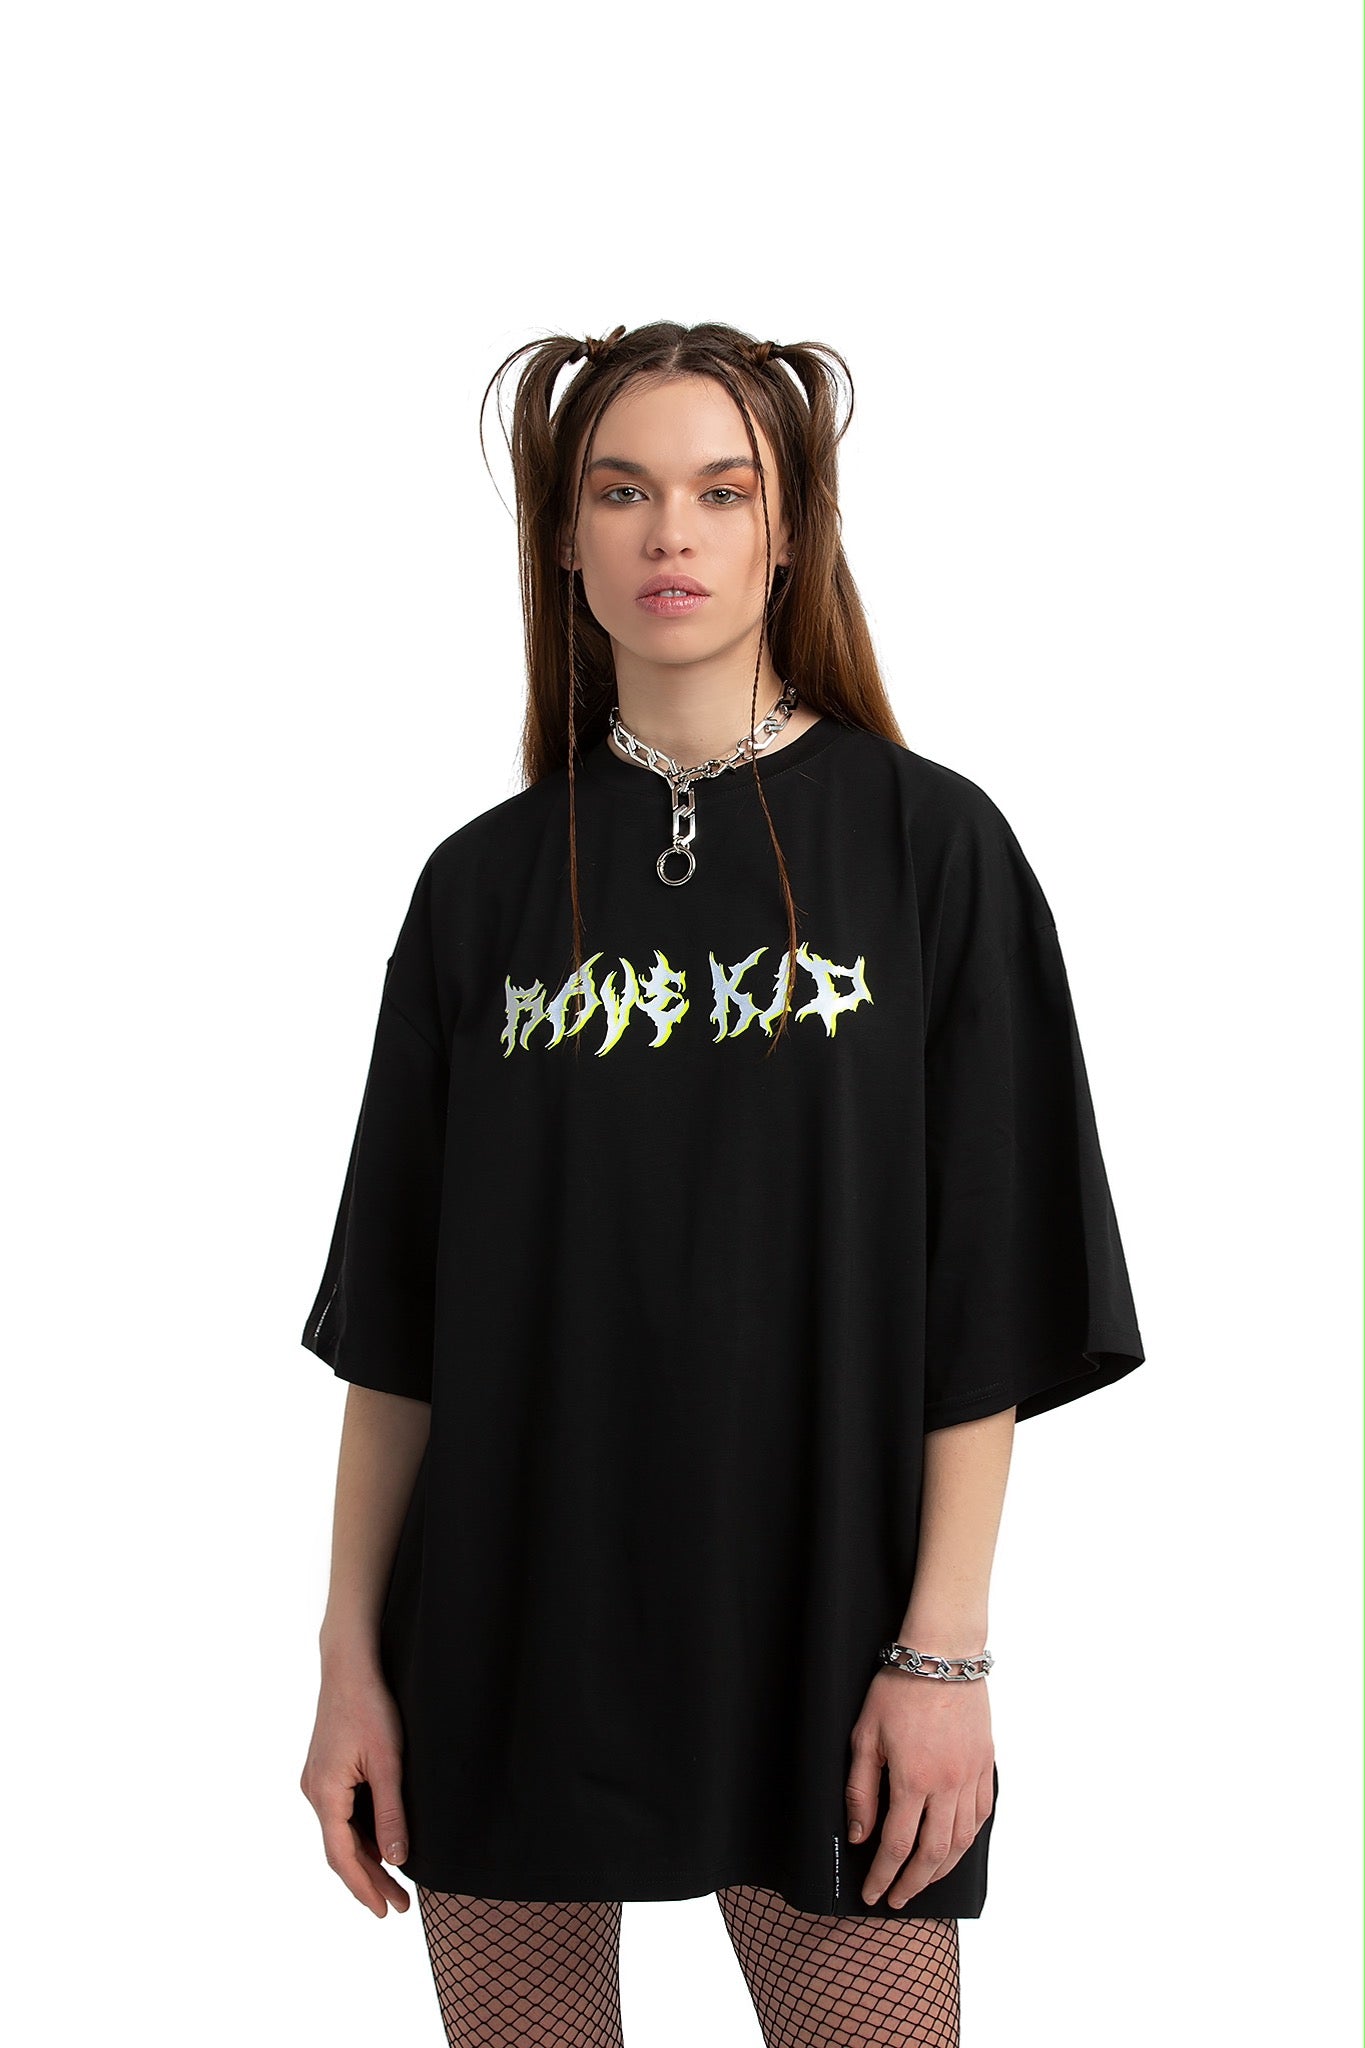 Rave Kid Unisex übergroßes T-Shirt [schwarz]